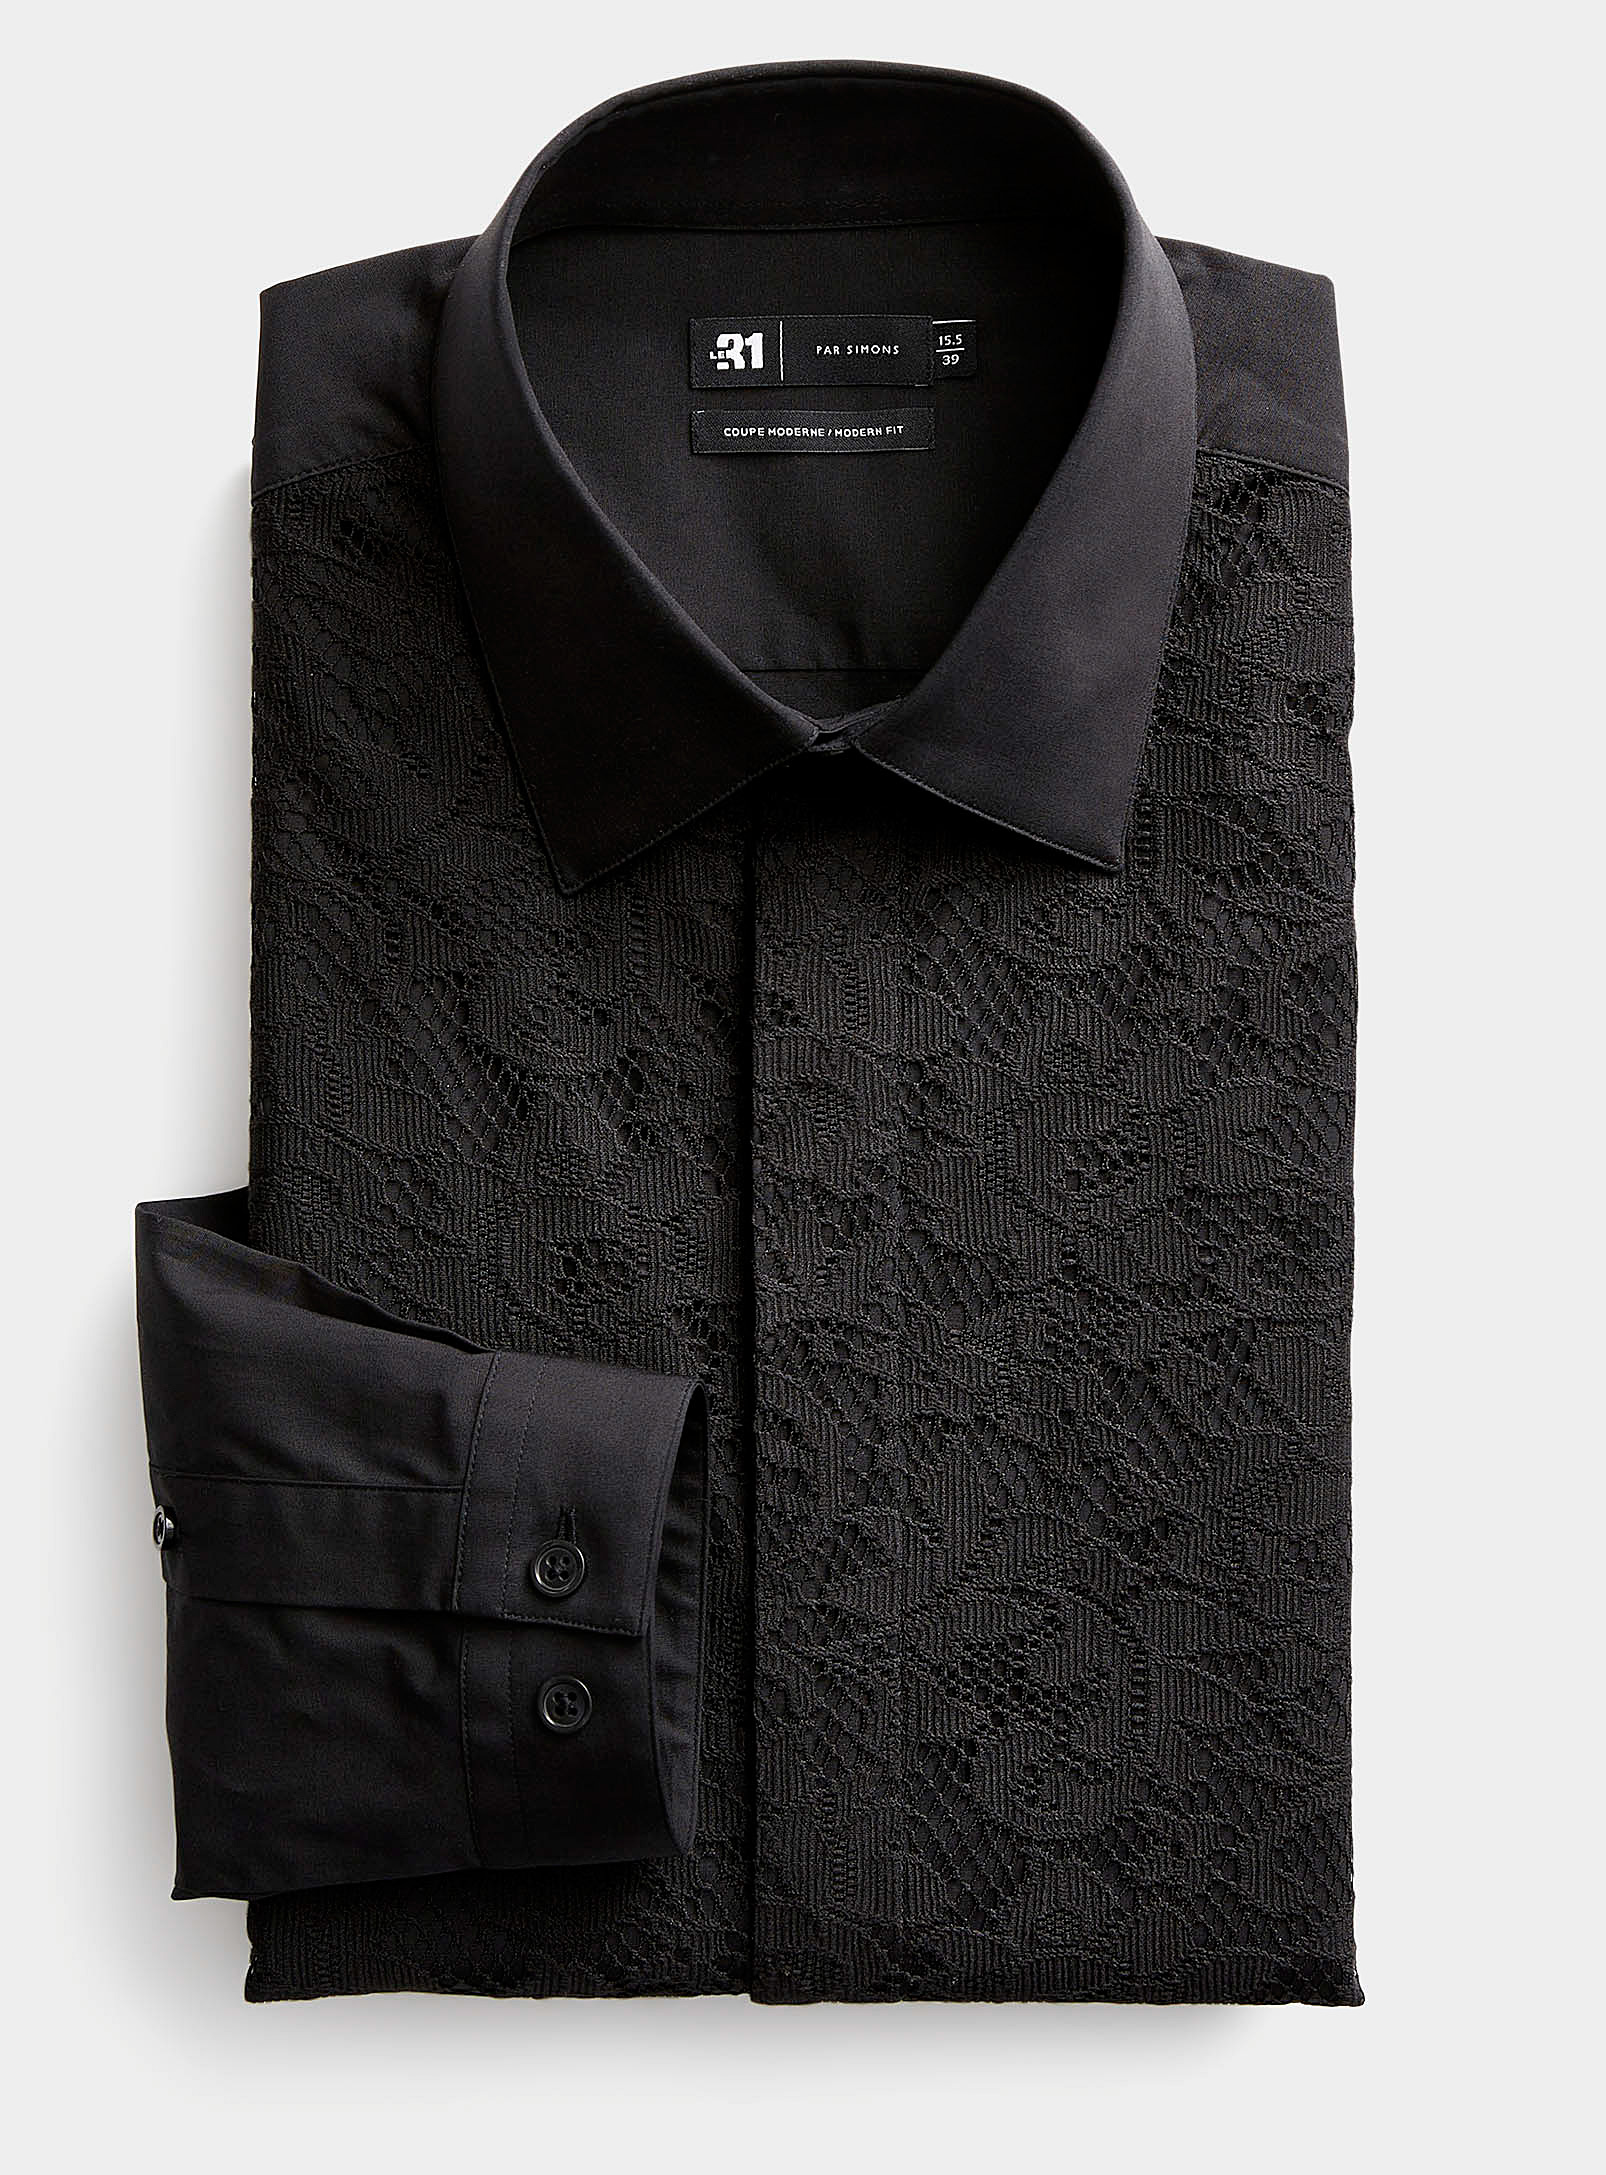 Le 31 Black Lace Shirt Modern Fit